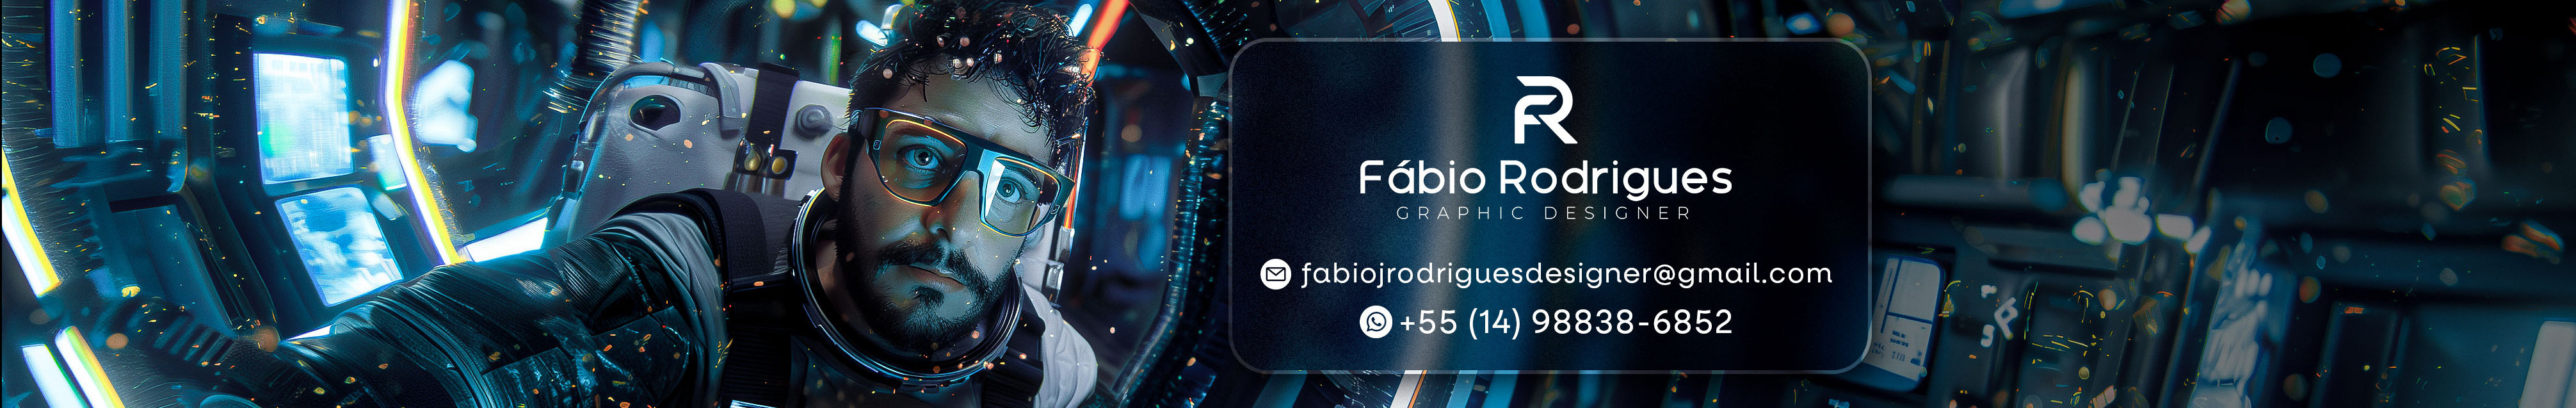 Banner de perfil de Fabio Rodrigues